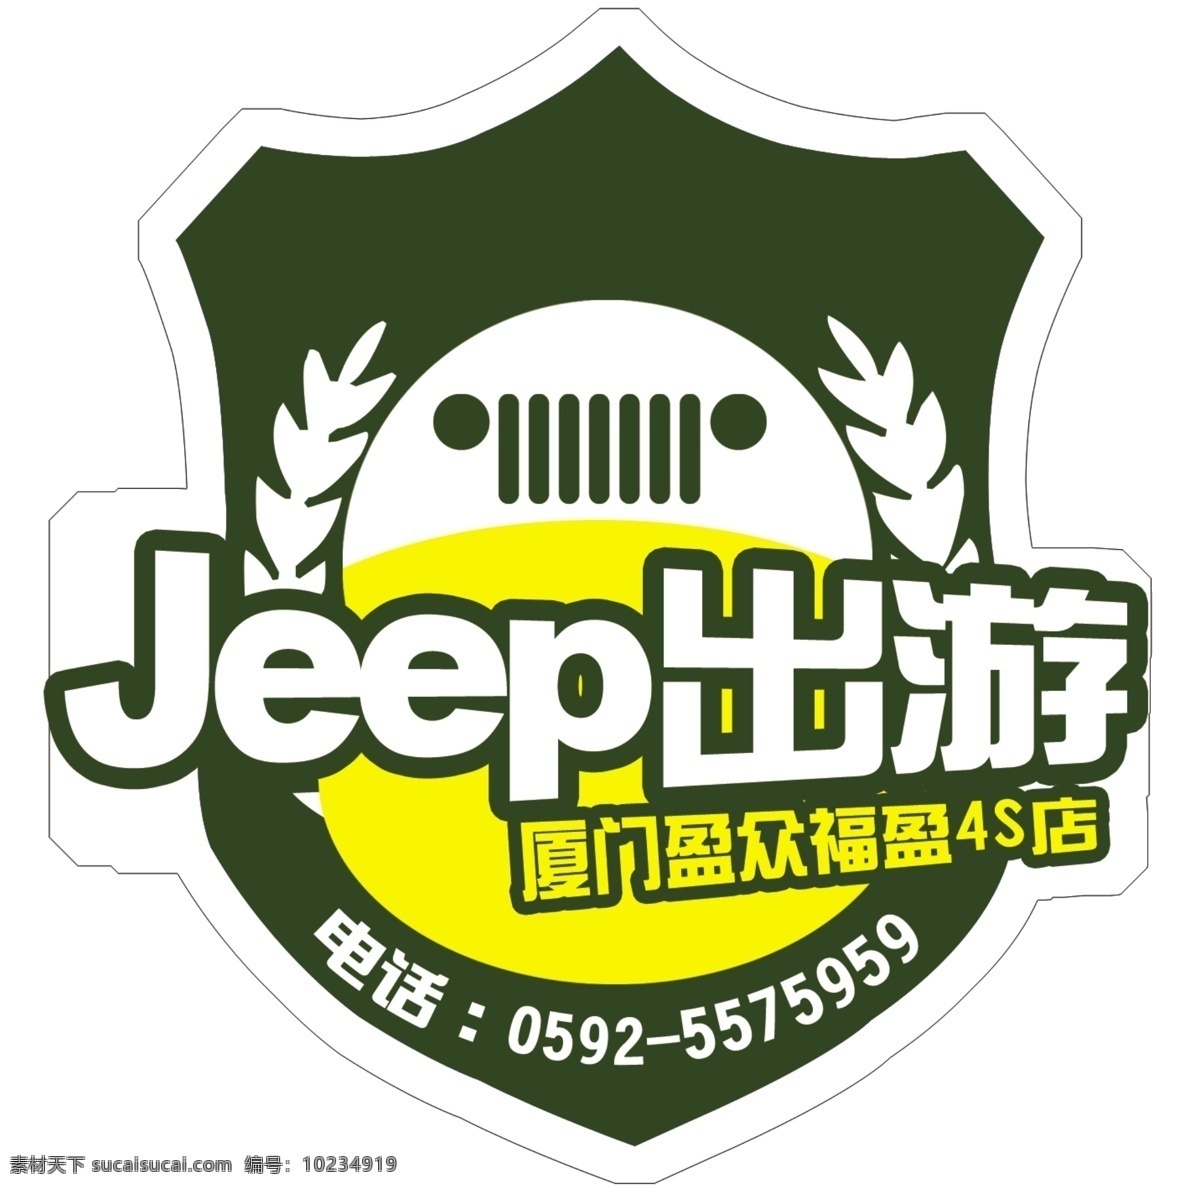 jeep 出游 自驾游车标 自驾游 车标 序号